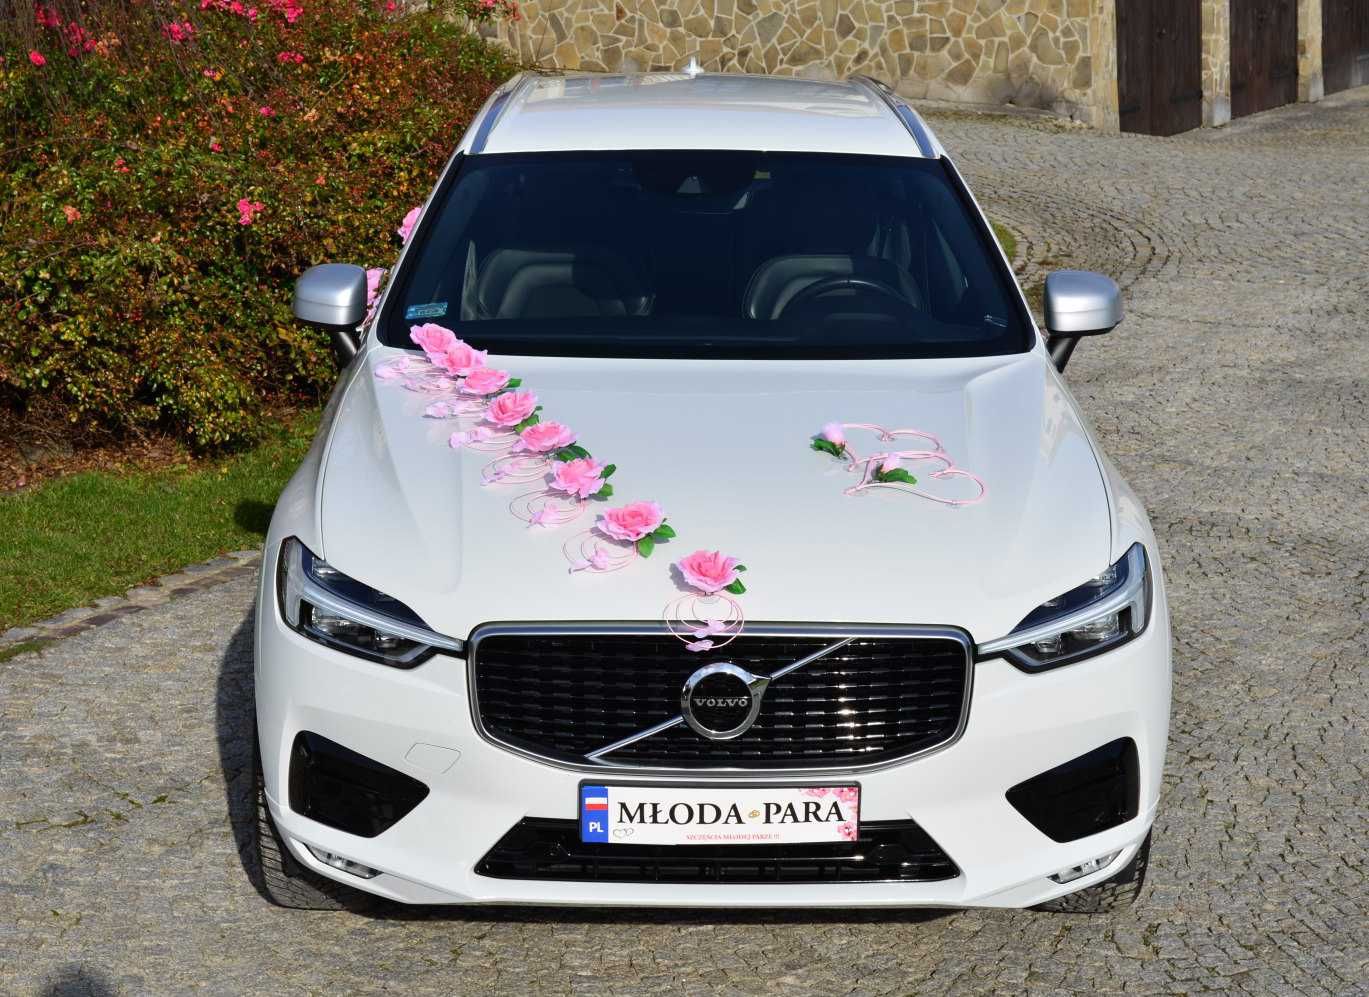 Ozdoba dekoracja na samochód weselny ślub przybranie auto 341